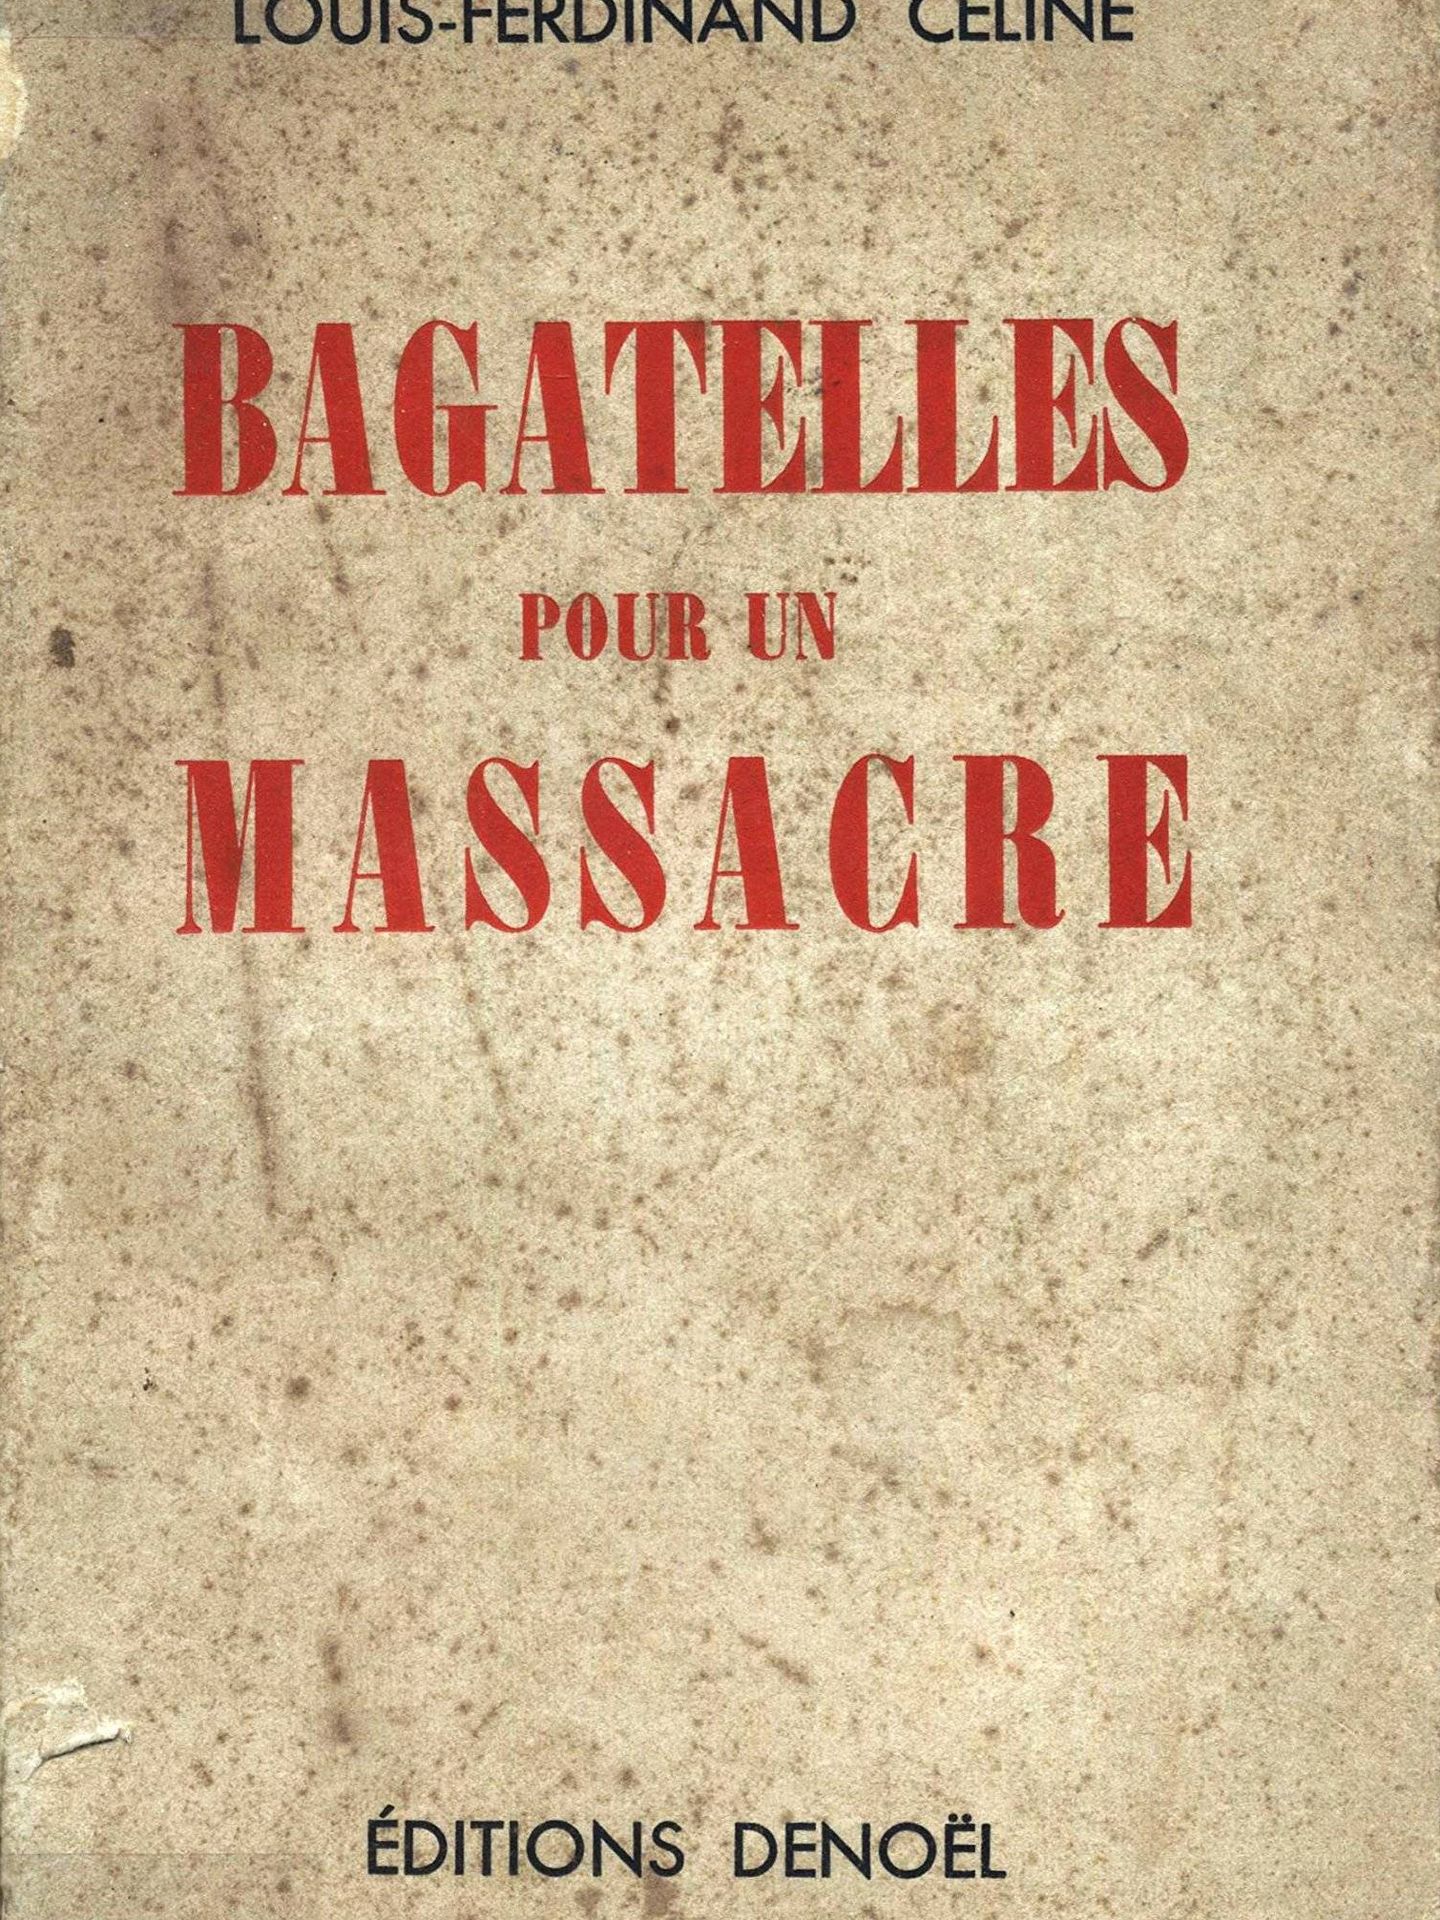 Primera edición de 'Bagatelas para una masacre'